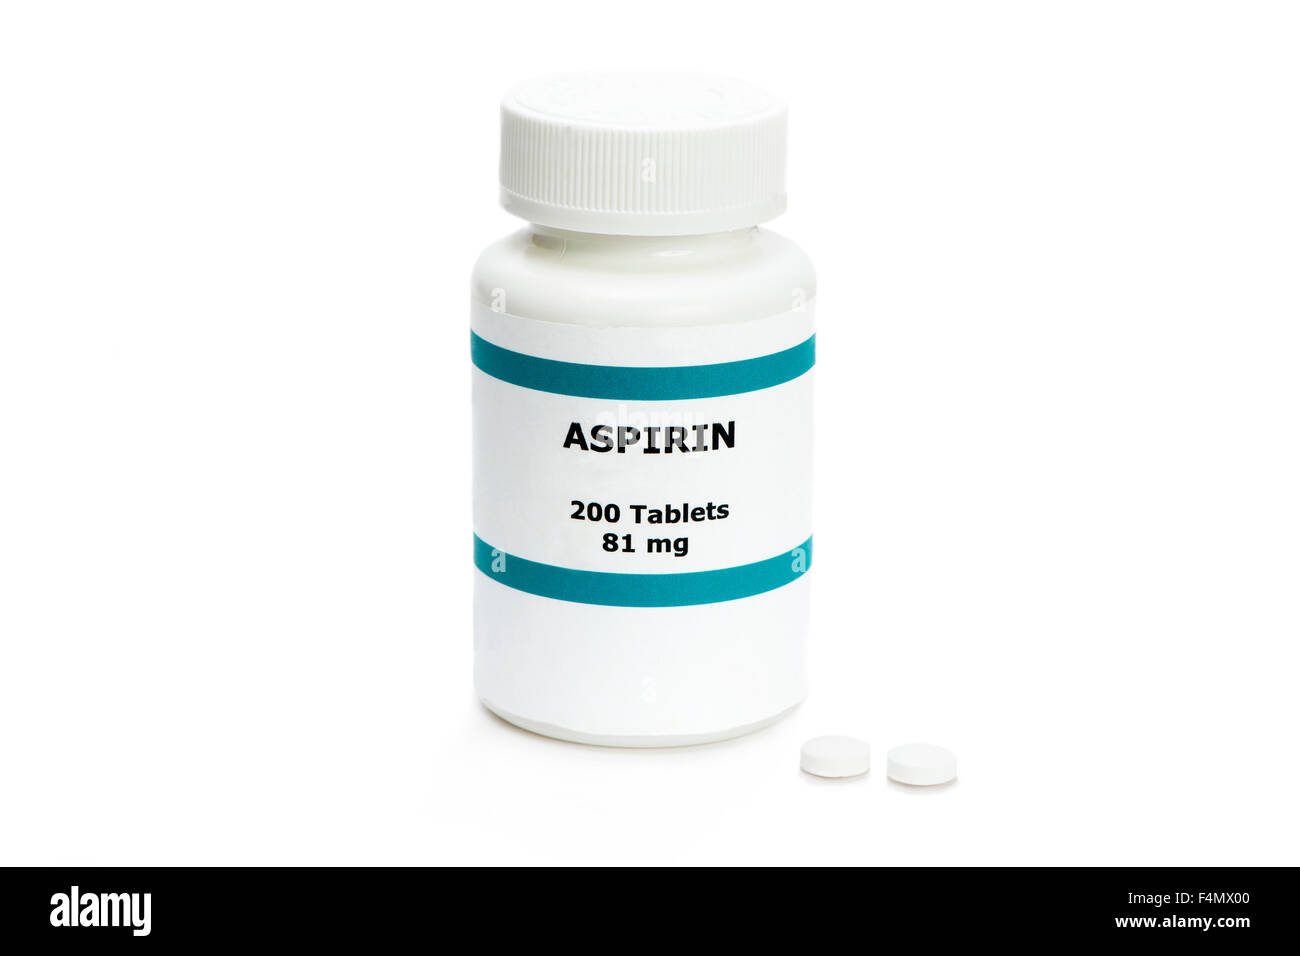 L'aspirina bottiglia con due pillole sul bianco. Etichetta è fittizia e qualsiasi somiglianza con qualsiasi prodotto effettivo è puramente casuale. Foto Stock